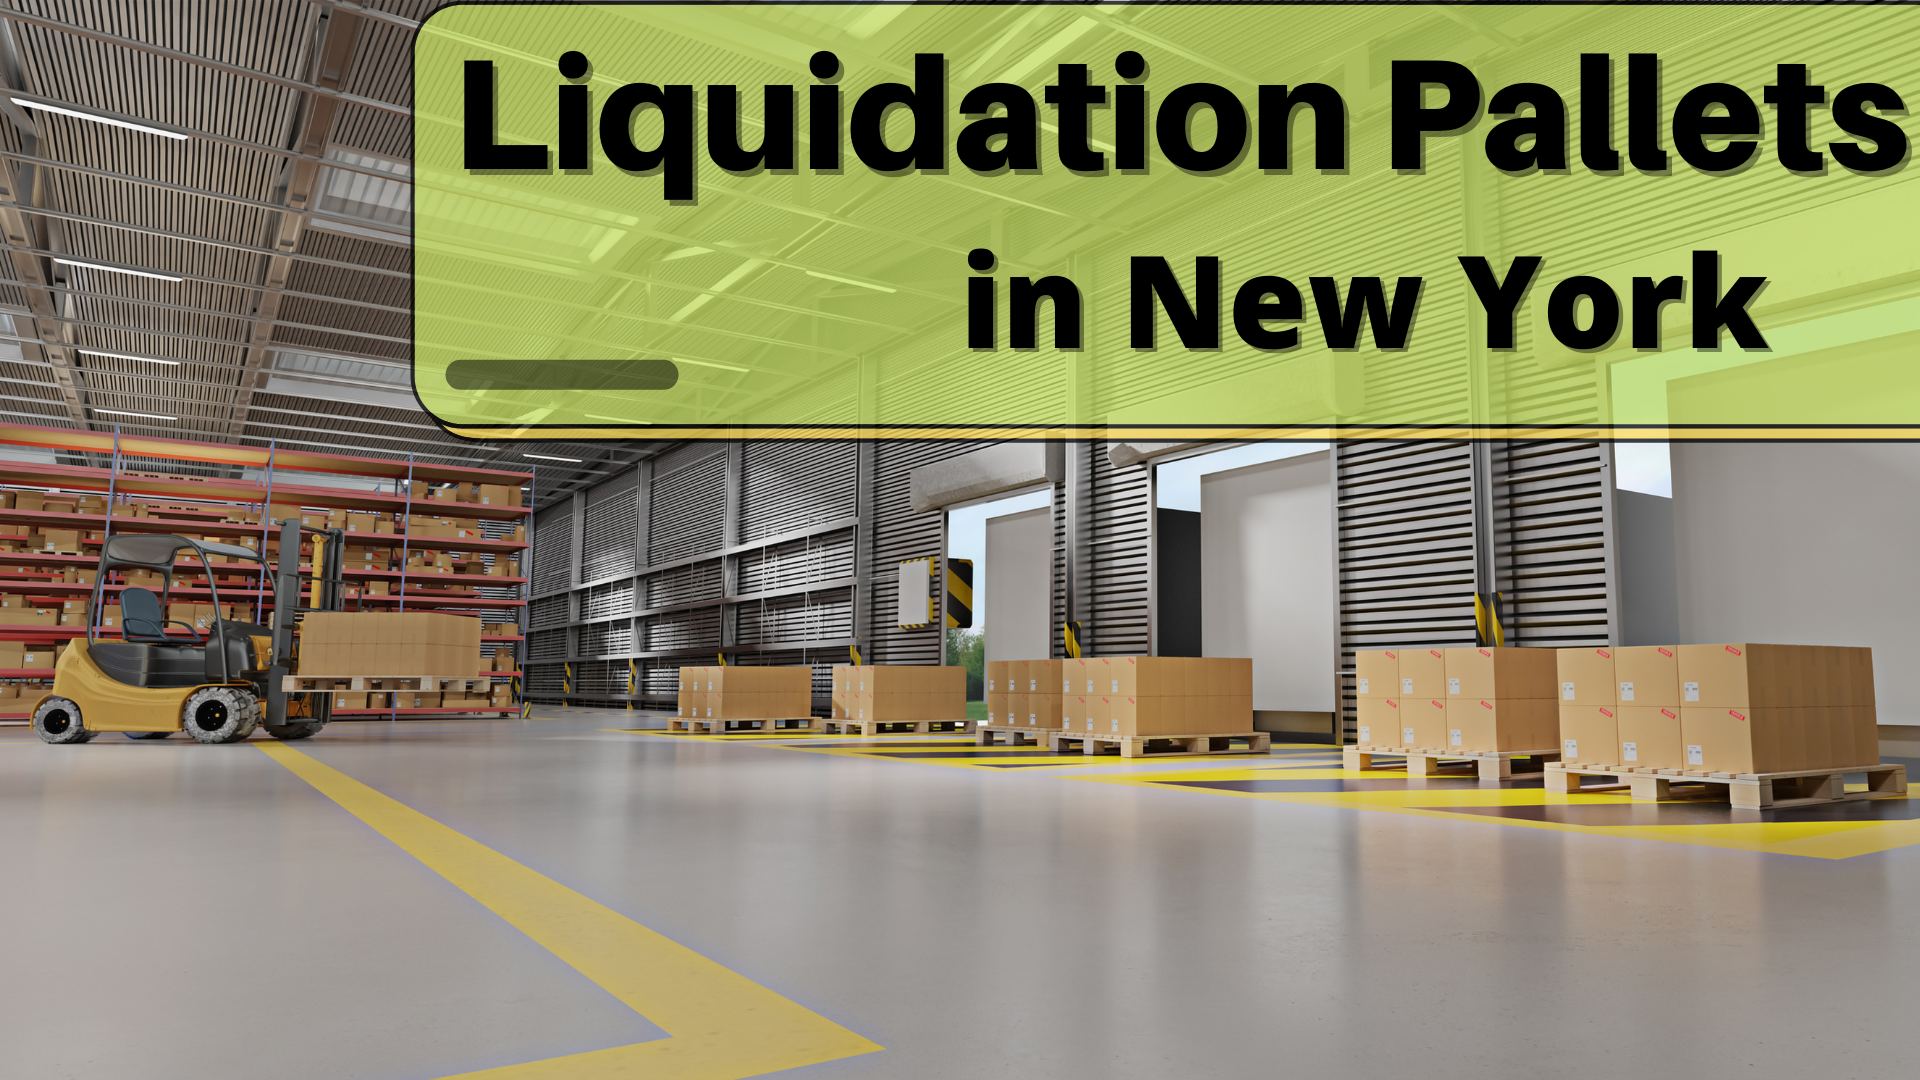 Liquidation Pallets in New York